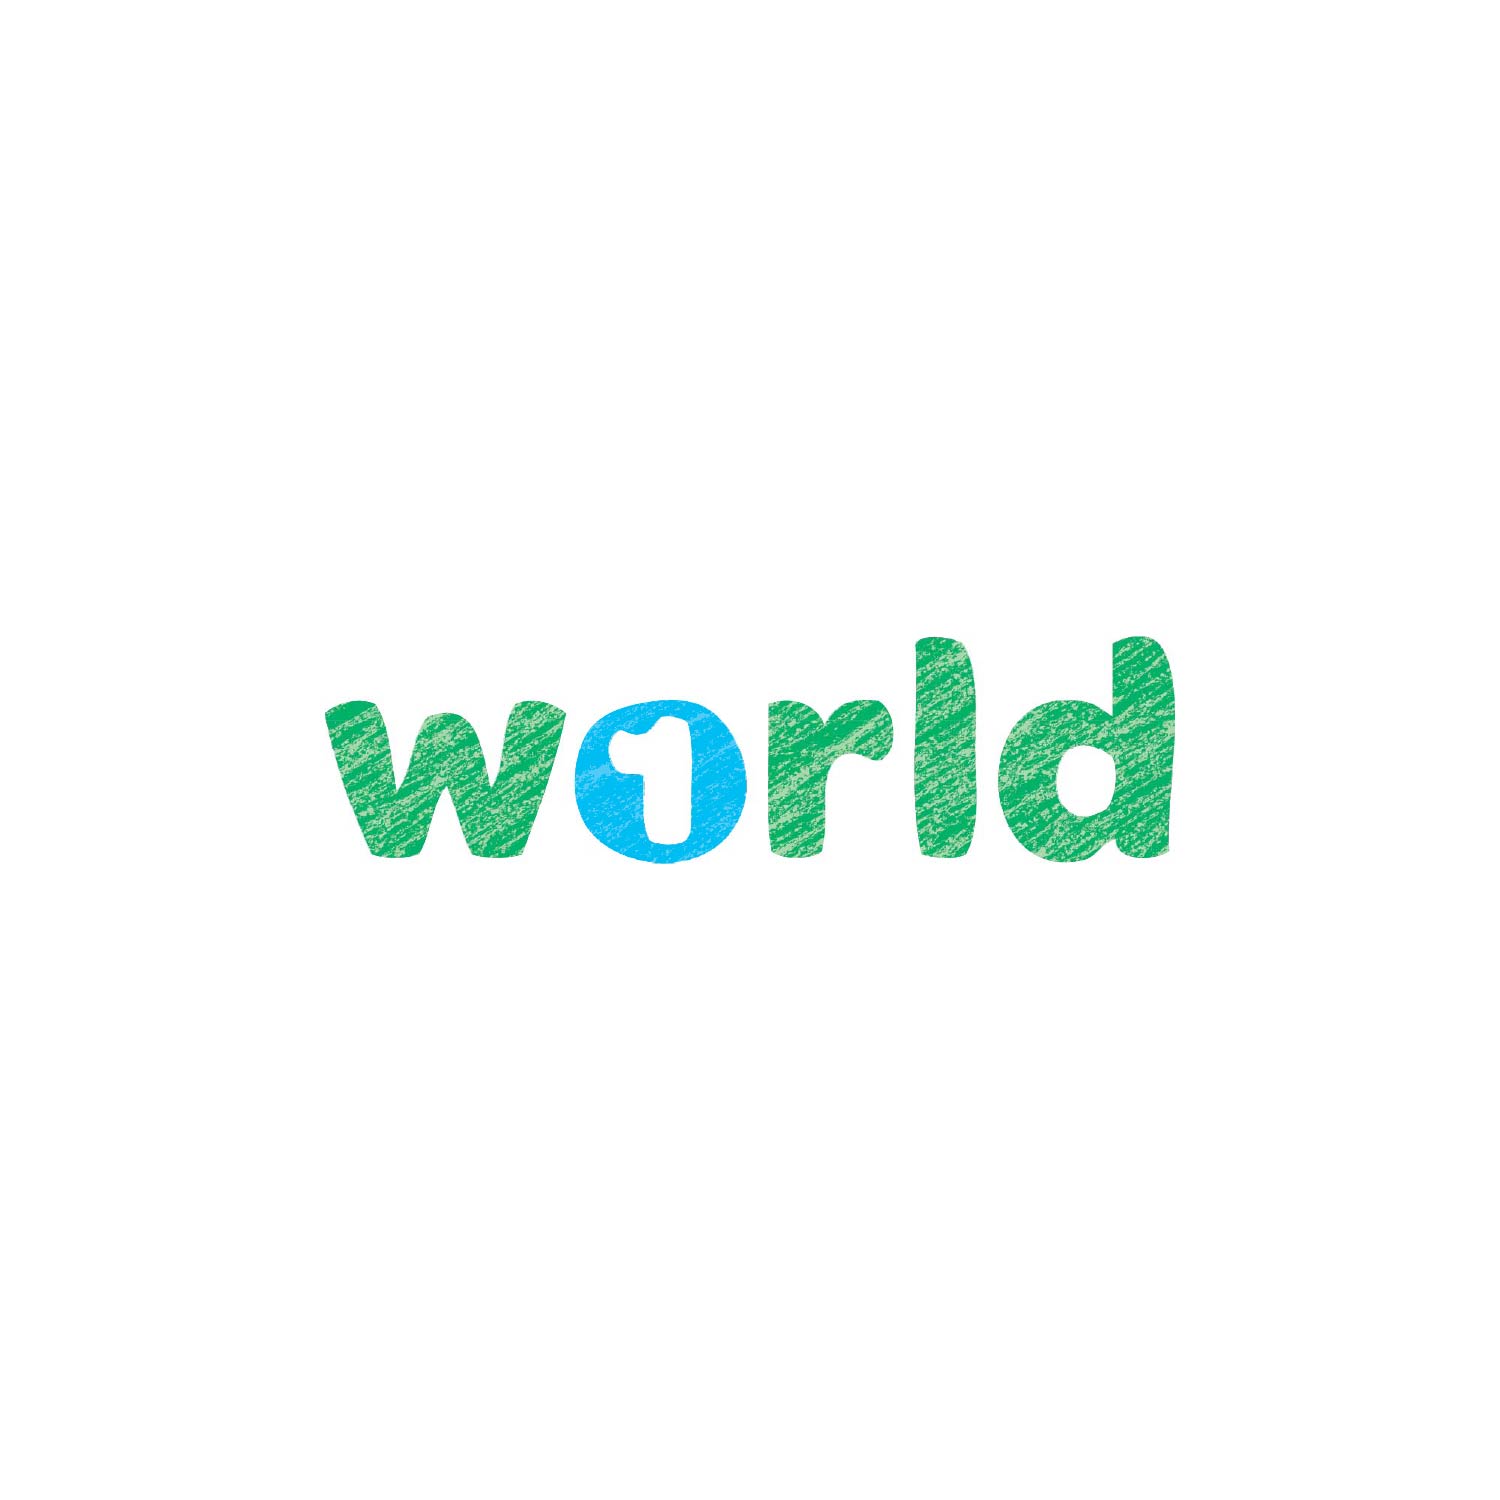 1_World_Wausau